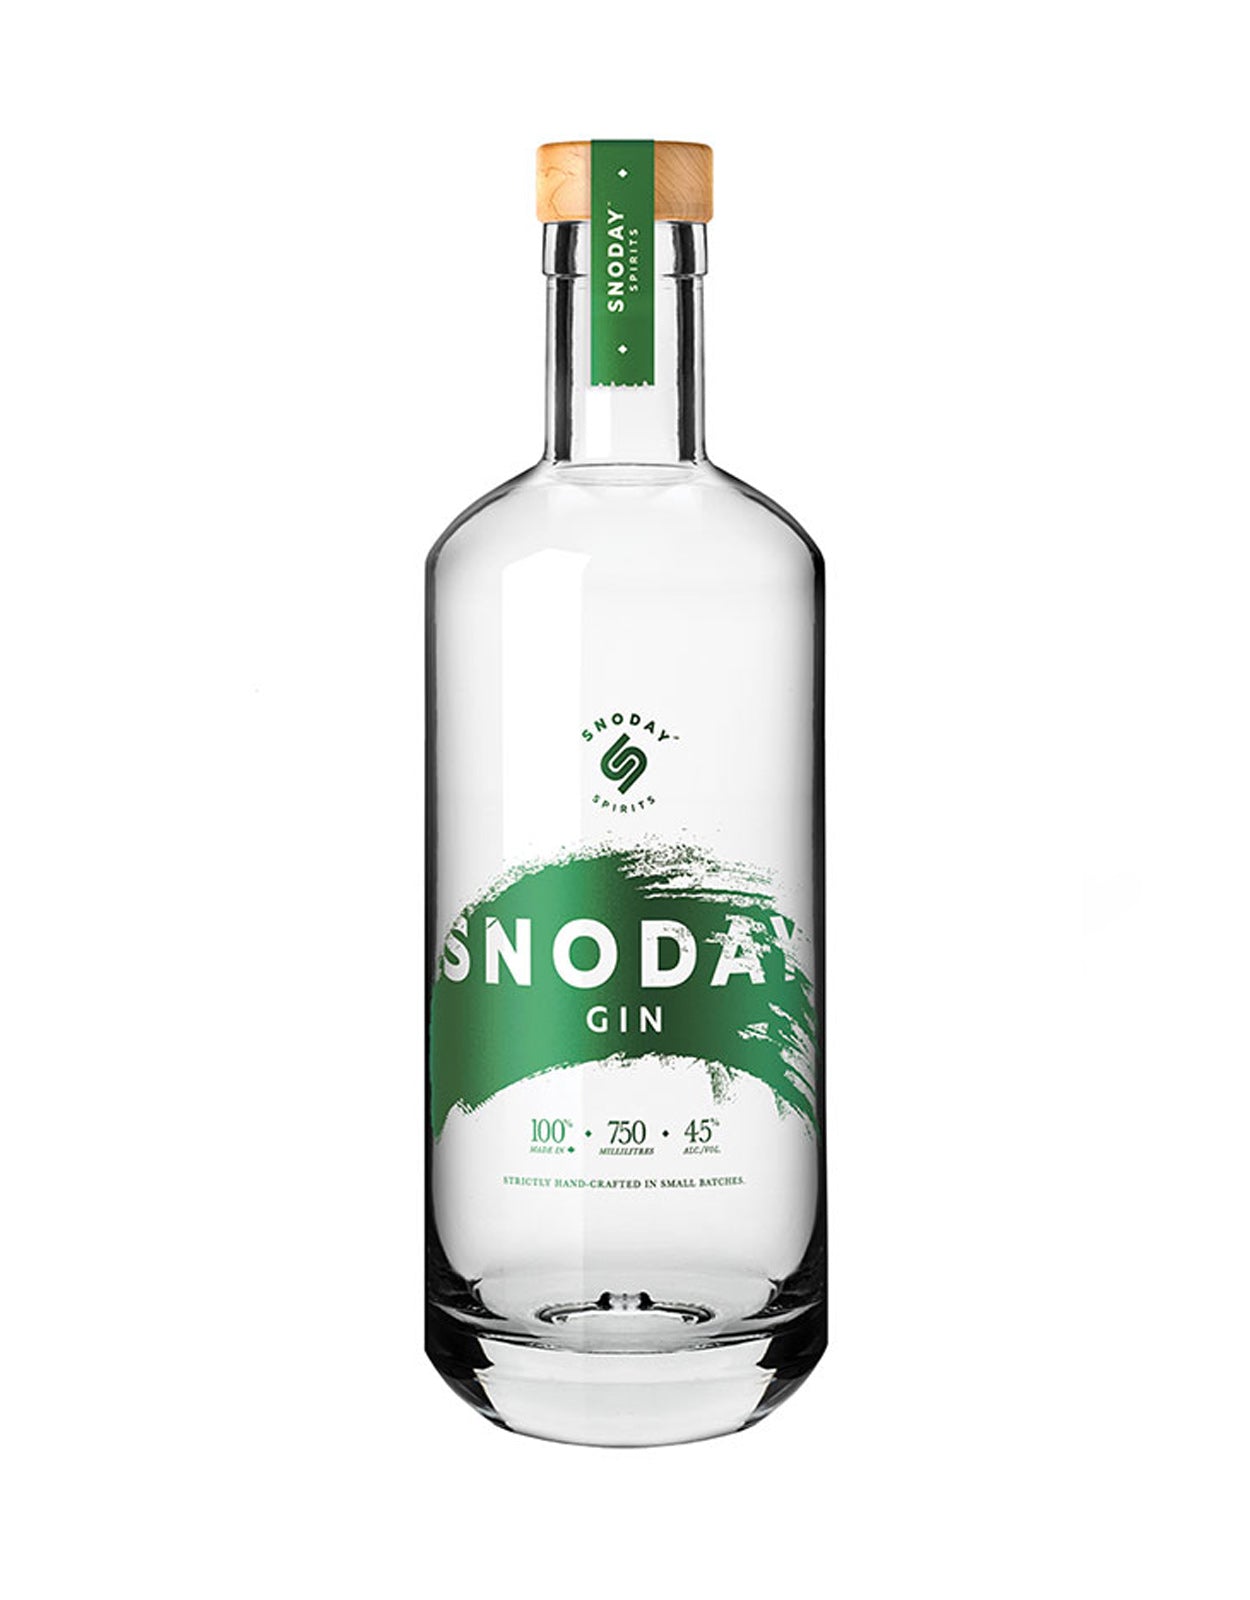 Snoday Gin - 750 ml